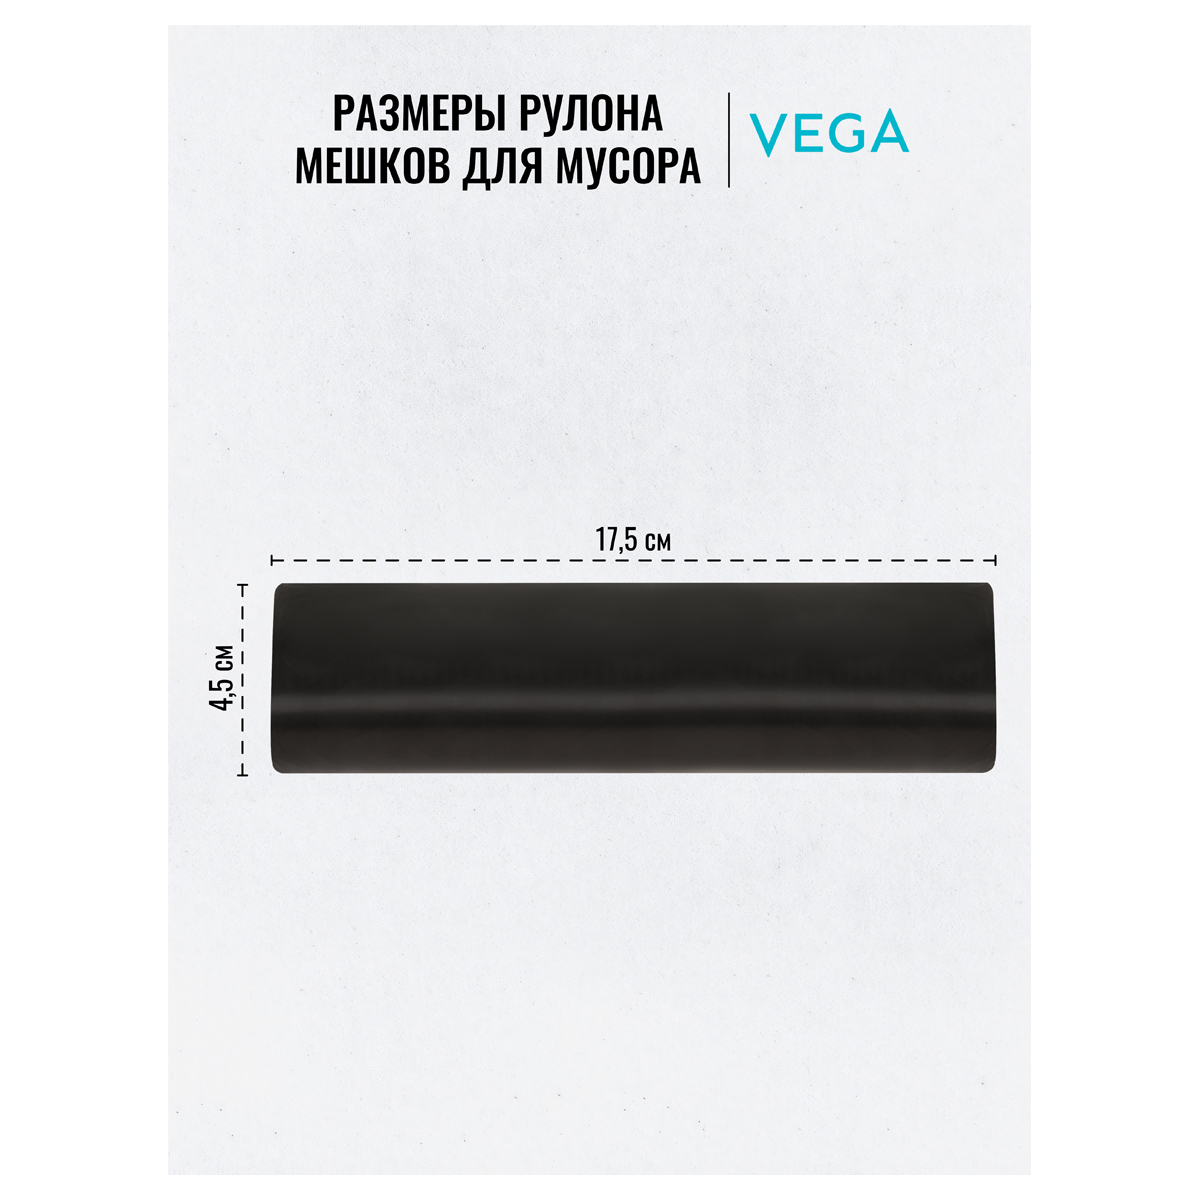 Мешки для мусора  120л Vega ПНД, 70*110см, 15мкм, 10шт., прочные, черные, в рулоне